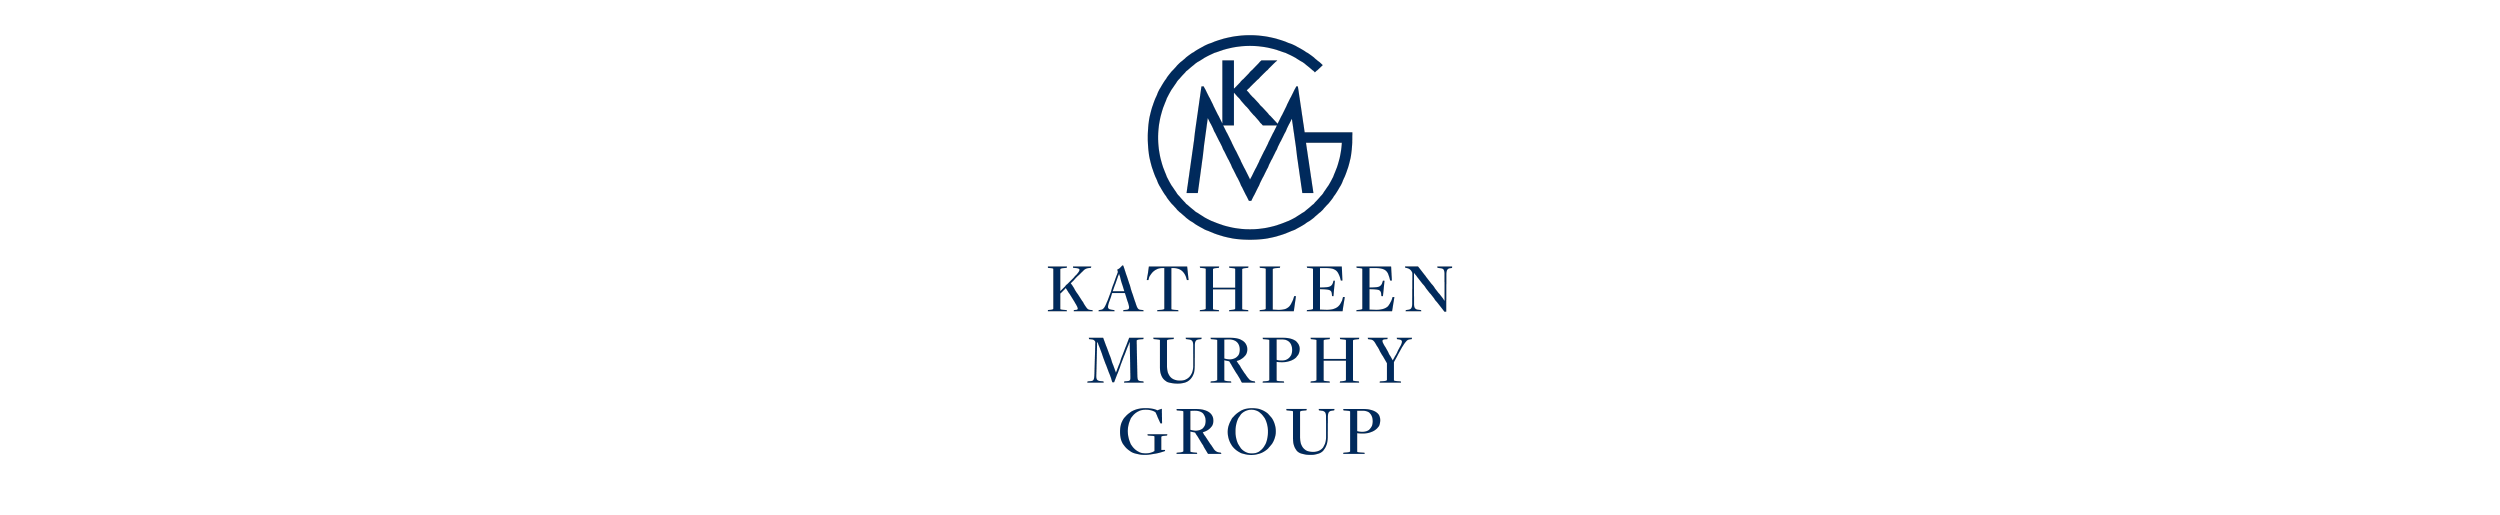 Kathleen Murphy Group